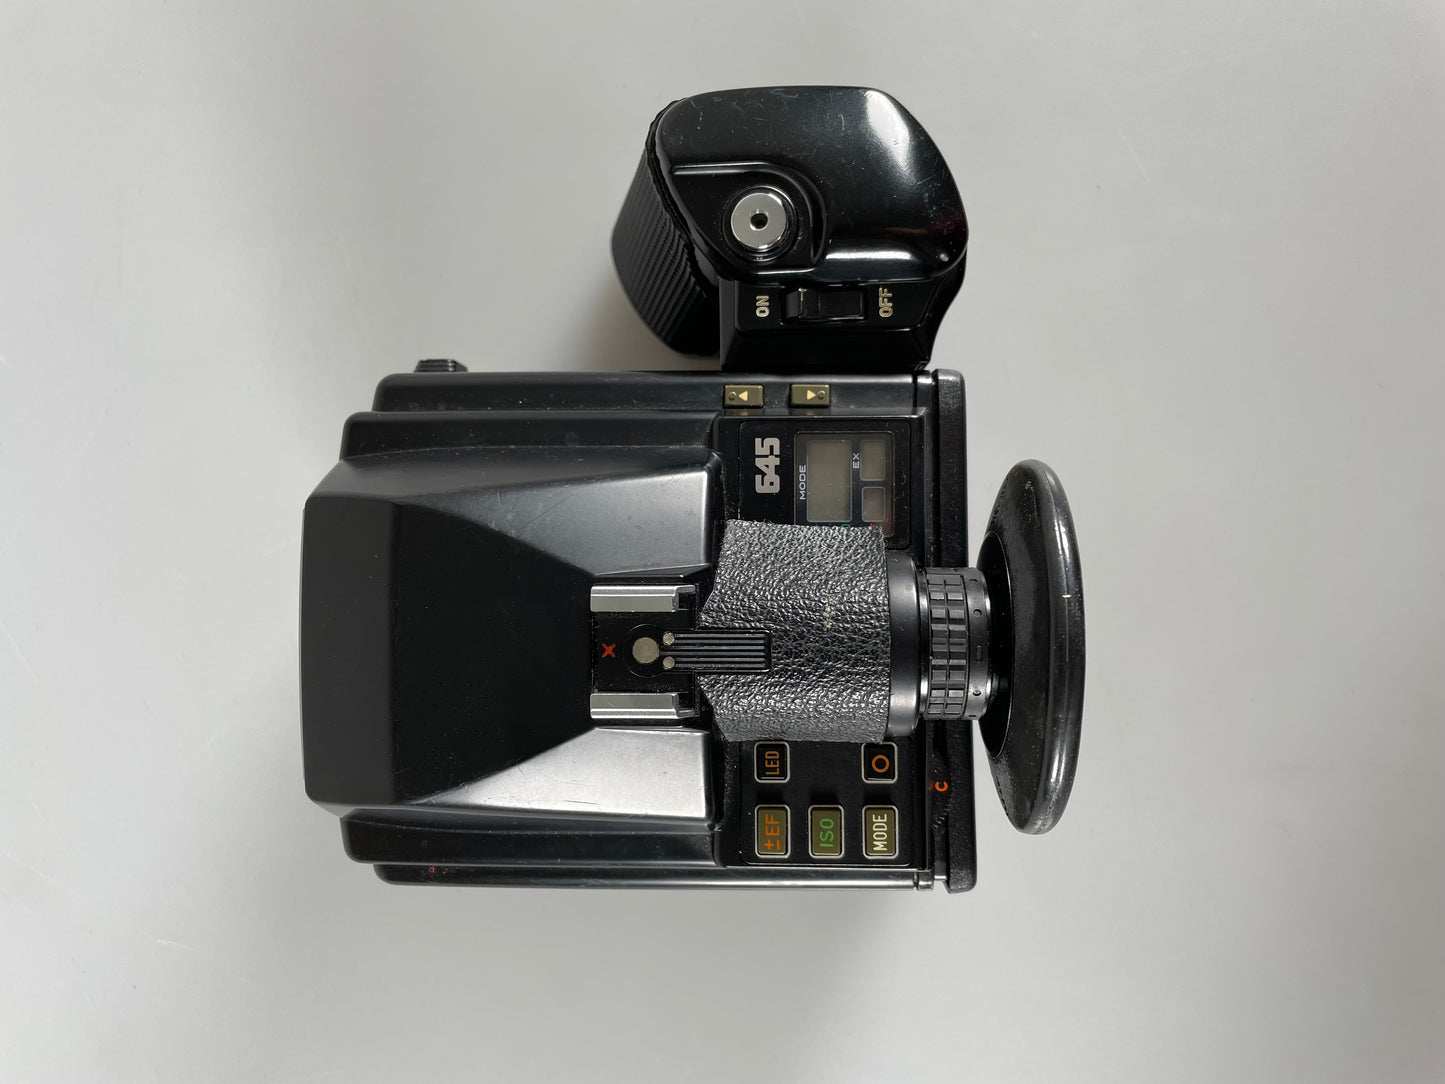 Pentax 645 Medium Format Film Camera Body 120 insert